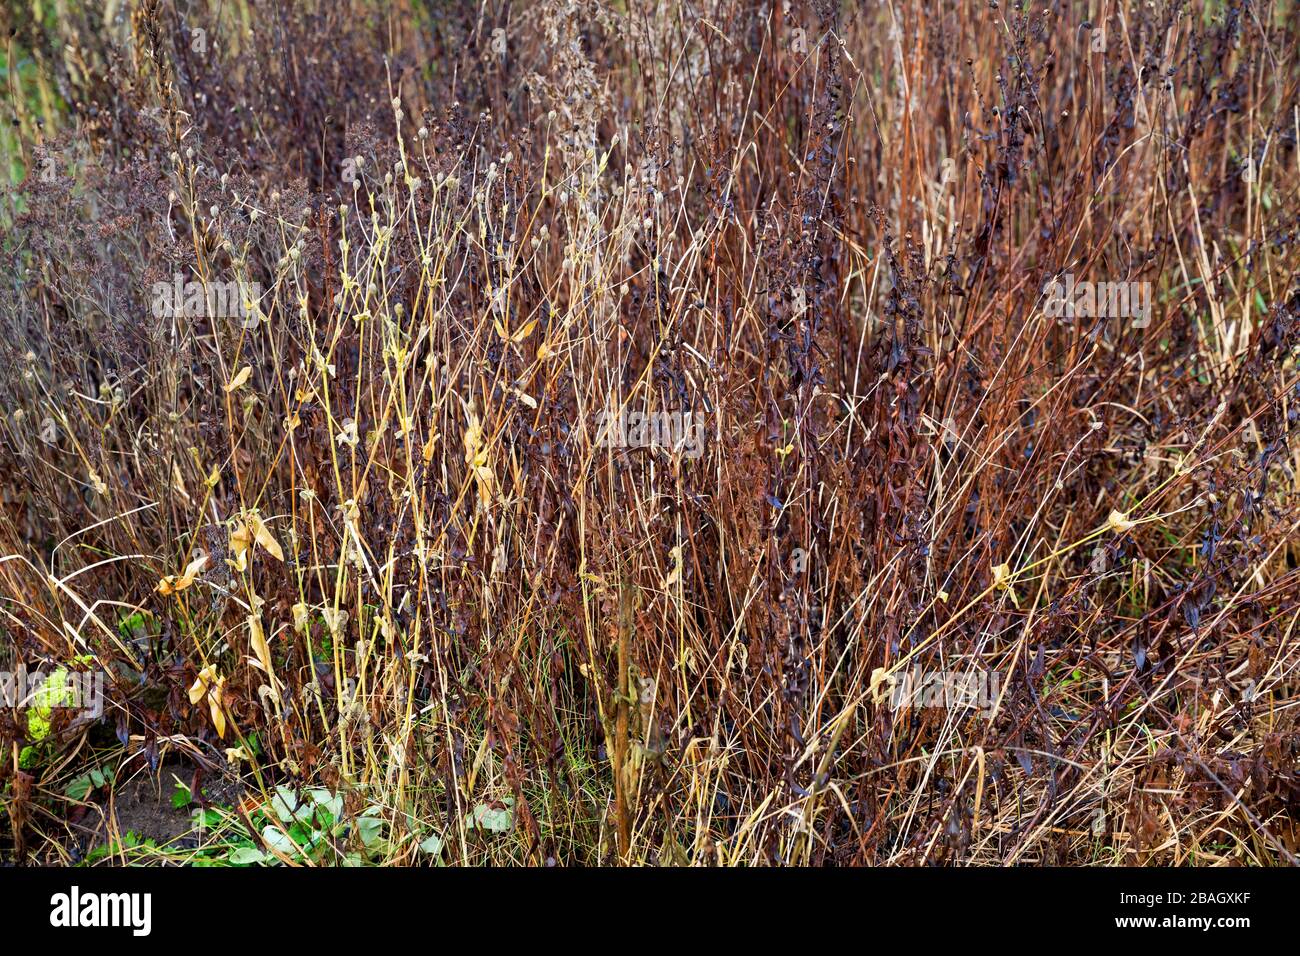 Jardín de la naturaleza, plantas muertas y secas descansando en un jardín como escondite para insekt, Alemania Foto de stock